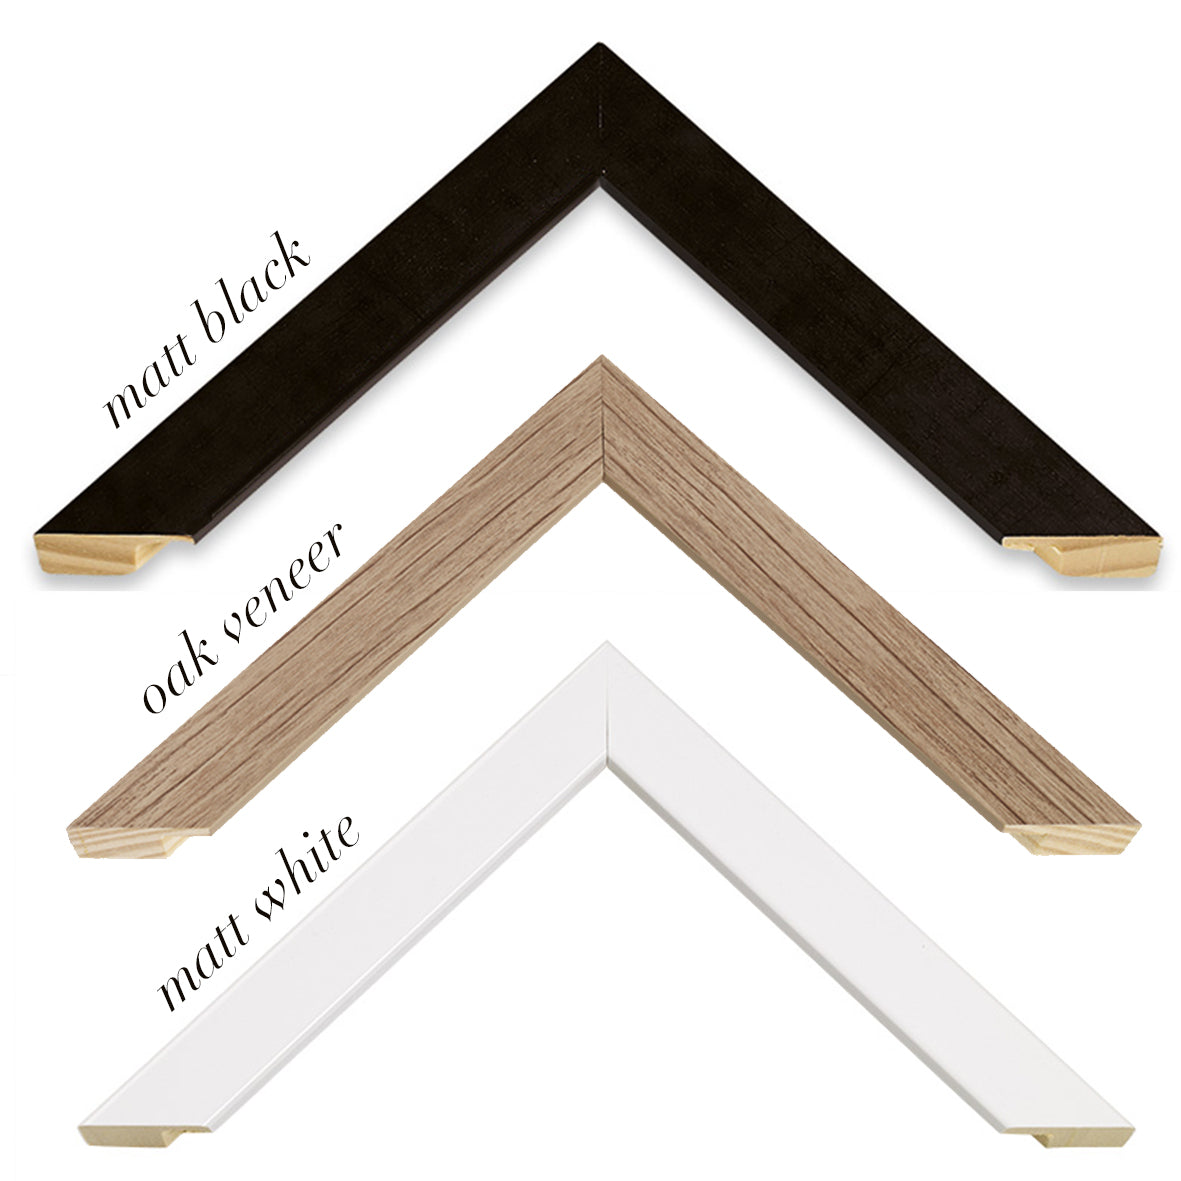 sample frames in matt white, matt black and oak veneer